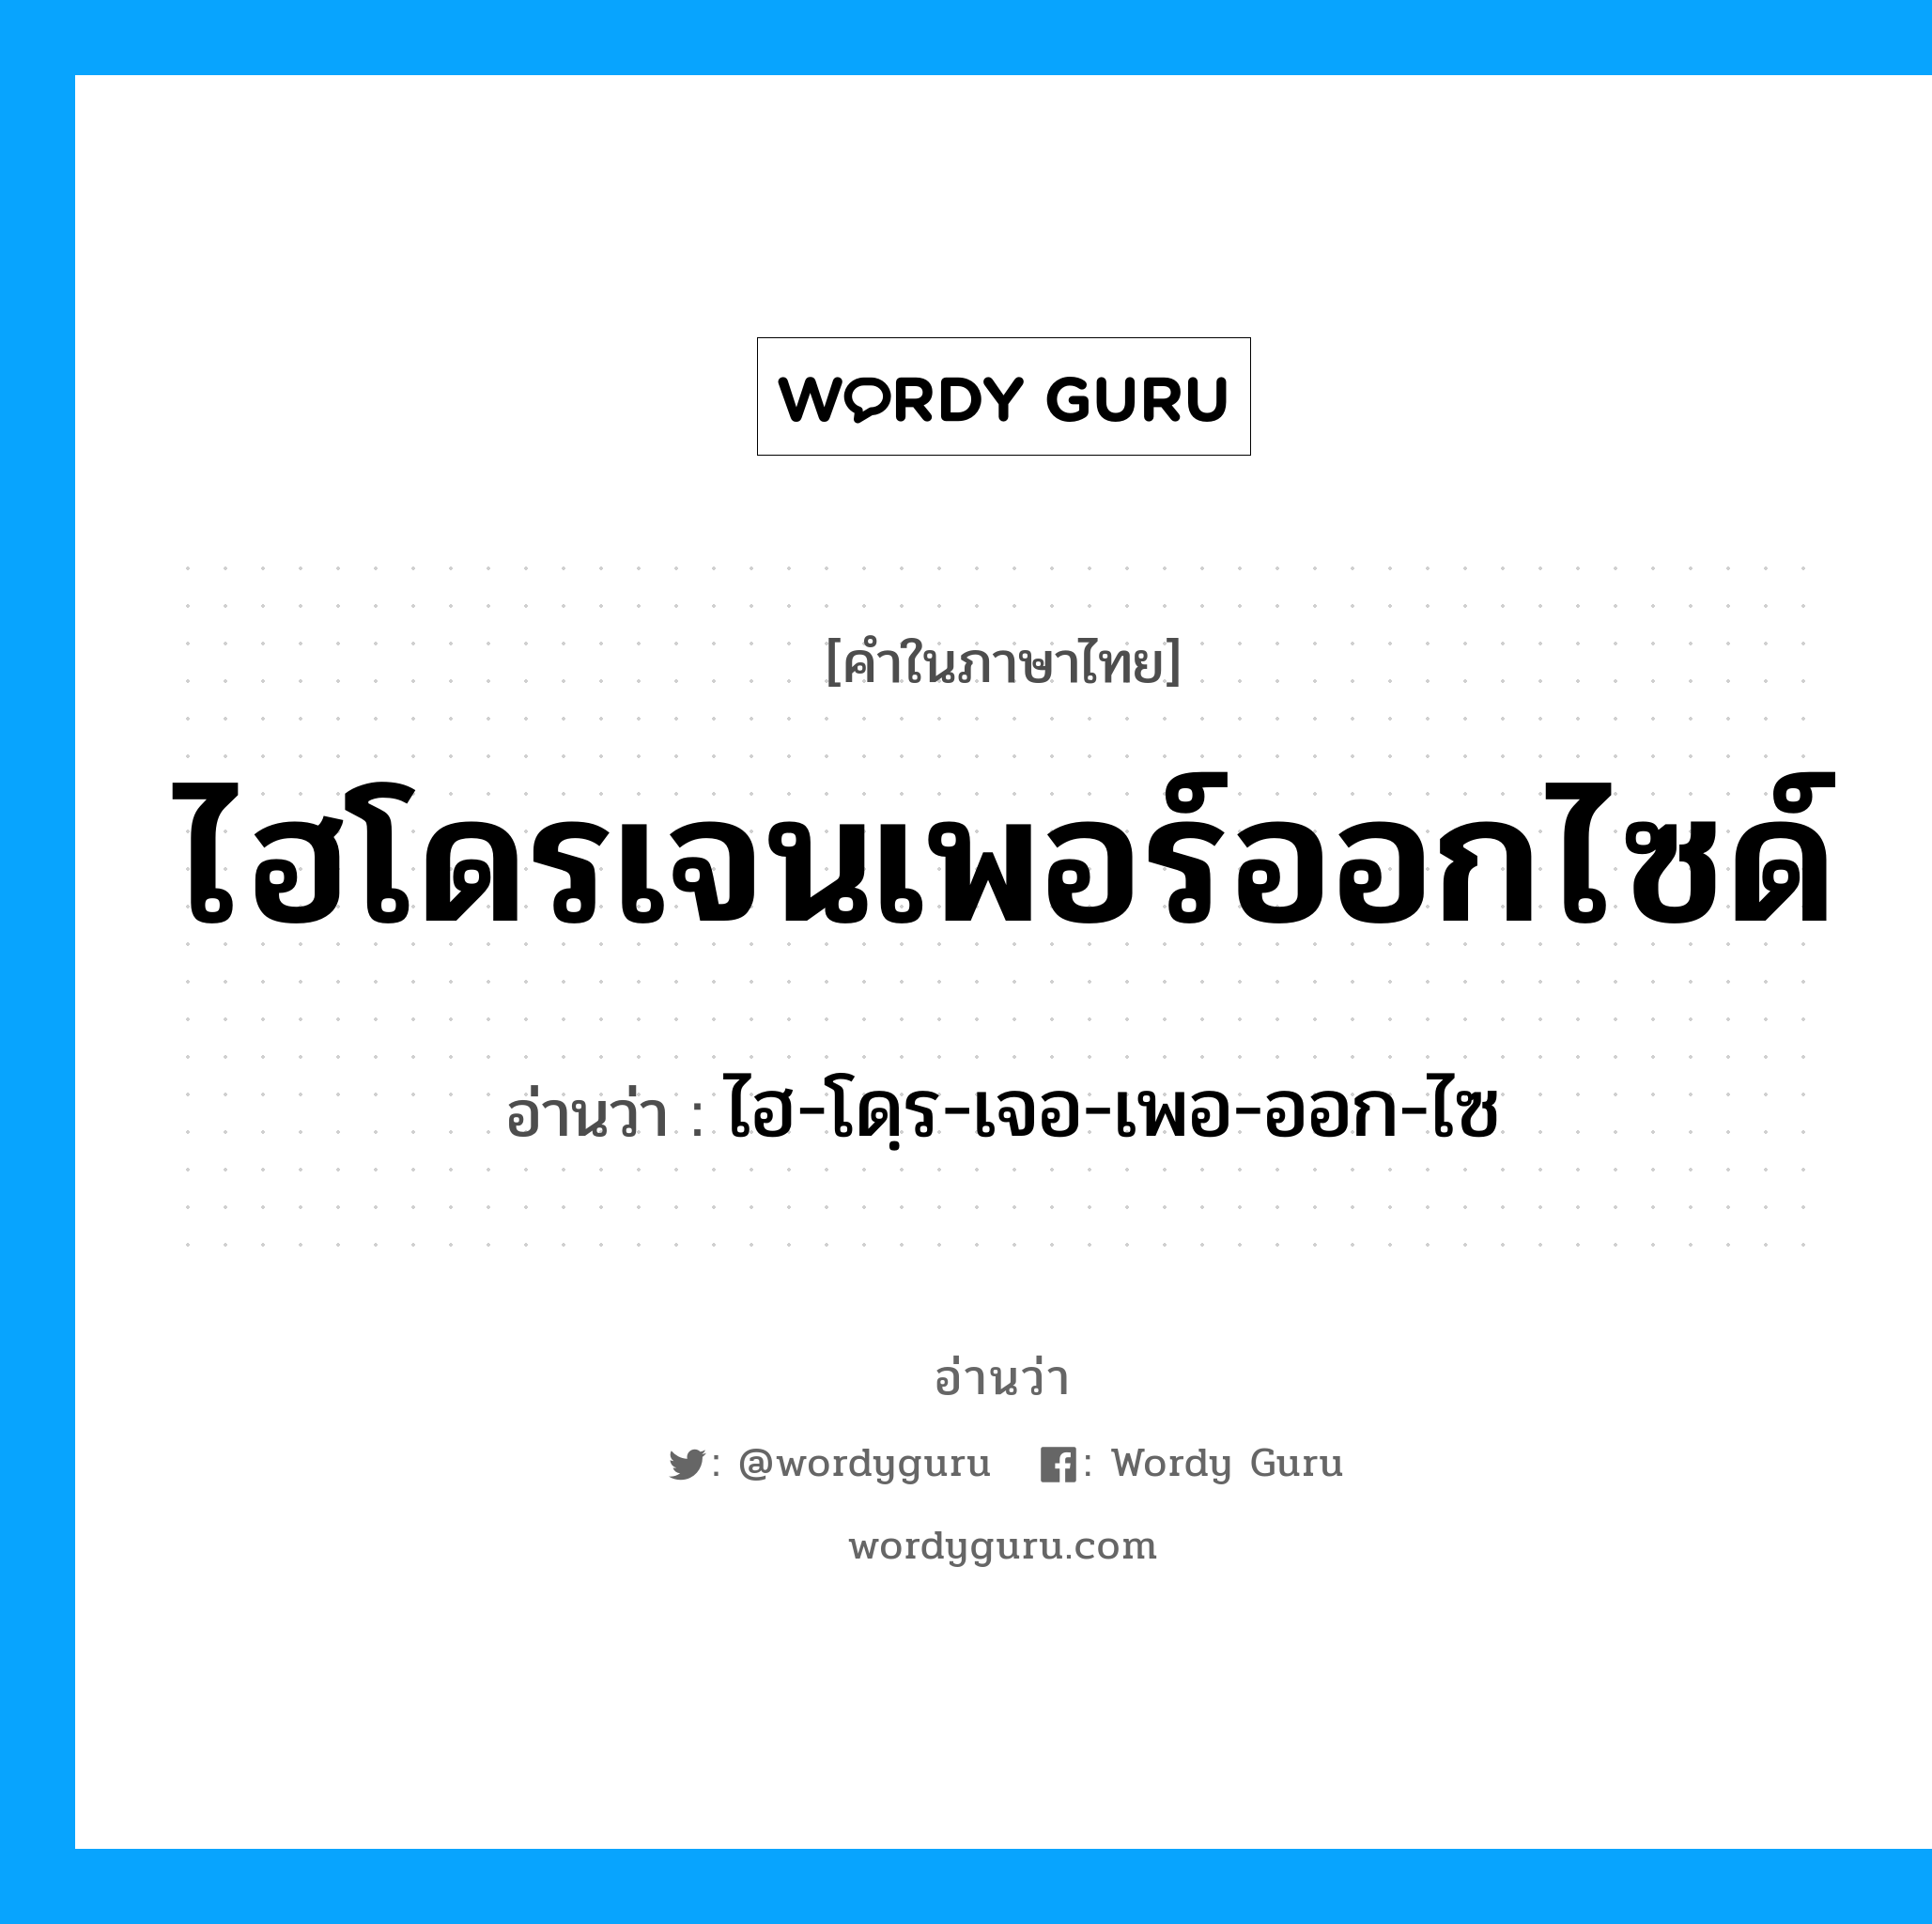 ไฮ-โดฺร-เจอ-เพอ-ออก-ไซ เป็นคำอ่านของคำไหน?, คำในภาษาไทย ไฮ-โดฺร-เจอ-เพอ-ออก-ไซ อ่านว่า ไฮโดรเจนเพอร์ออกไซด์